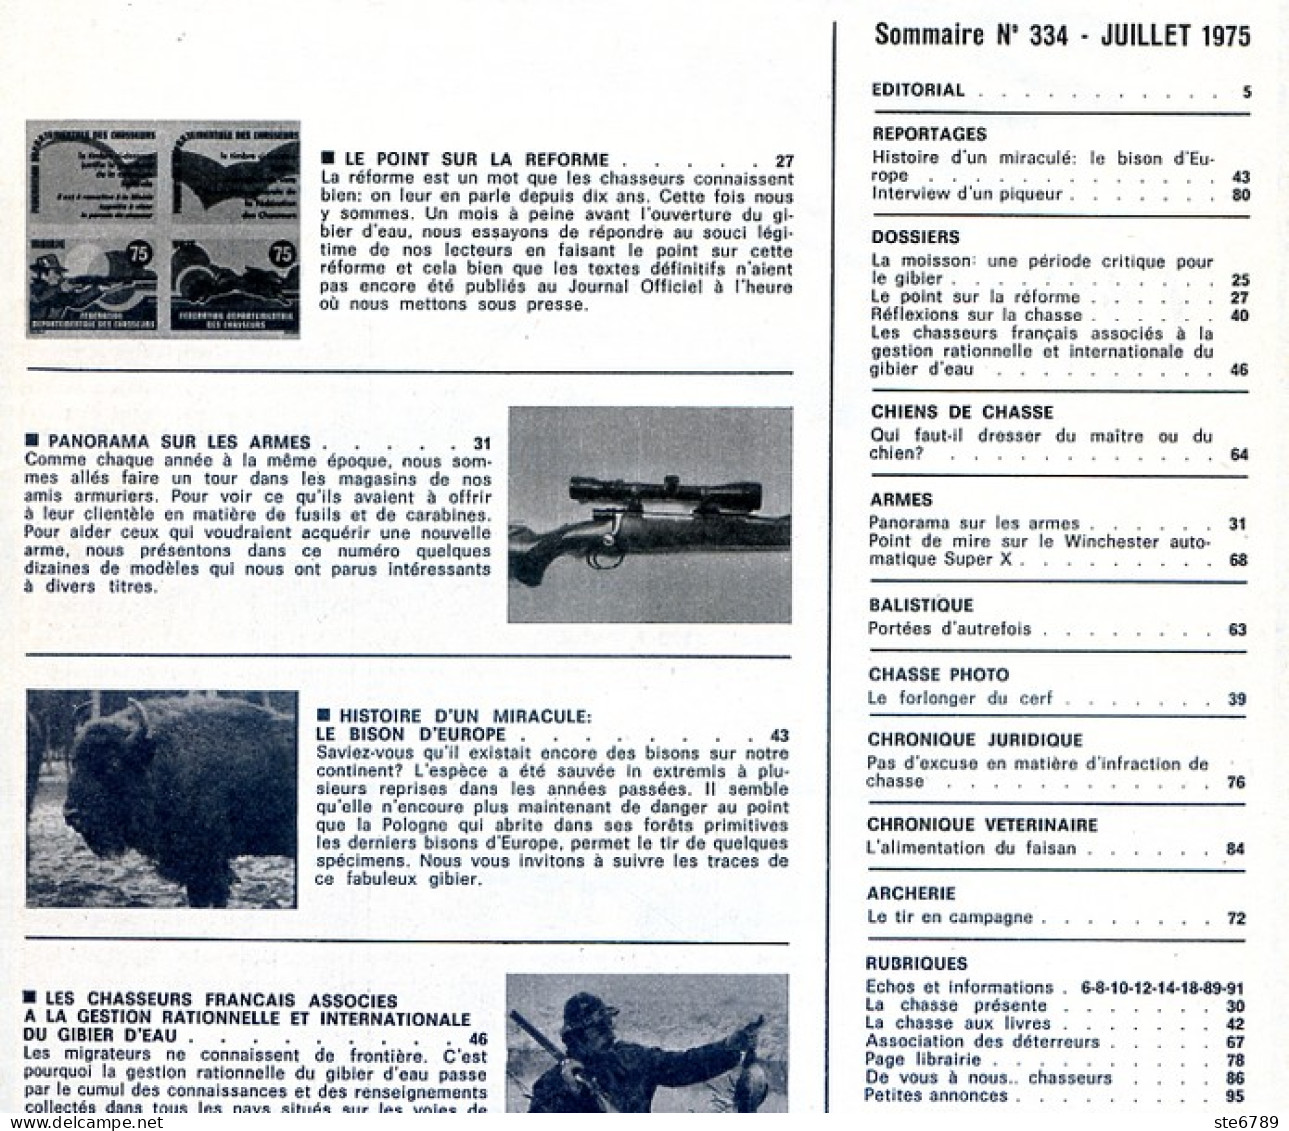 La Revue Nationale De LA CHASSE N° 334 Juillet 1975 Canards Plongeurs , Armes , Bisons D'Europe - Chasse & Pêche